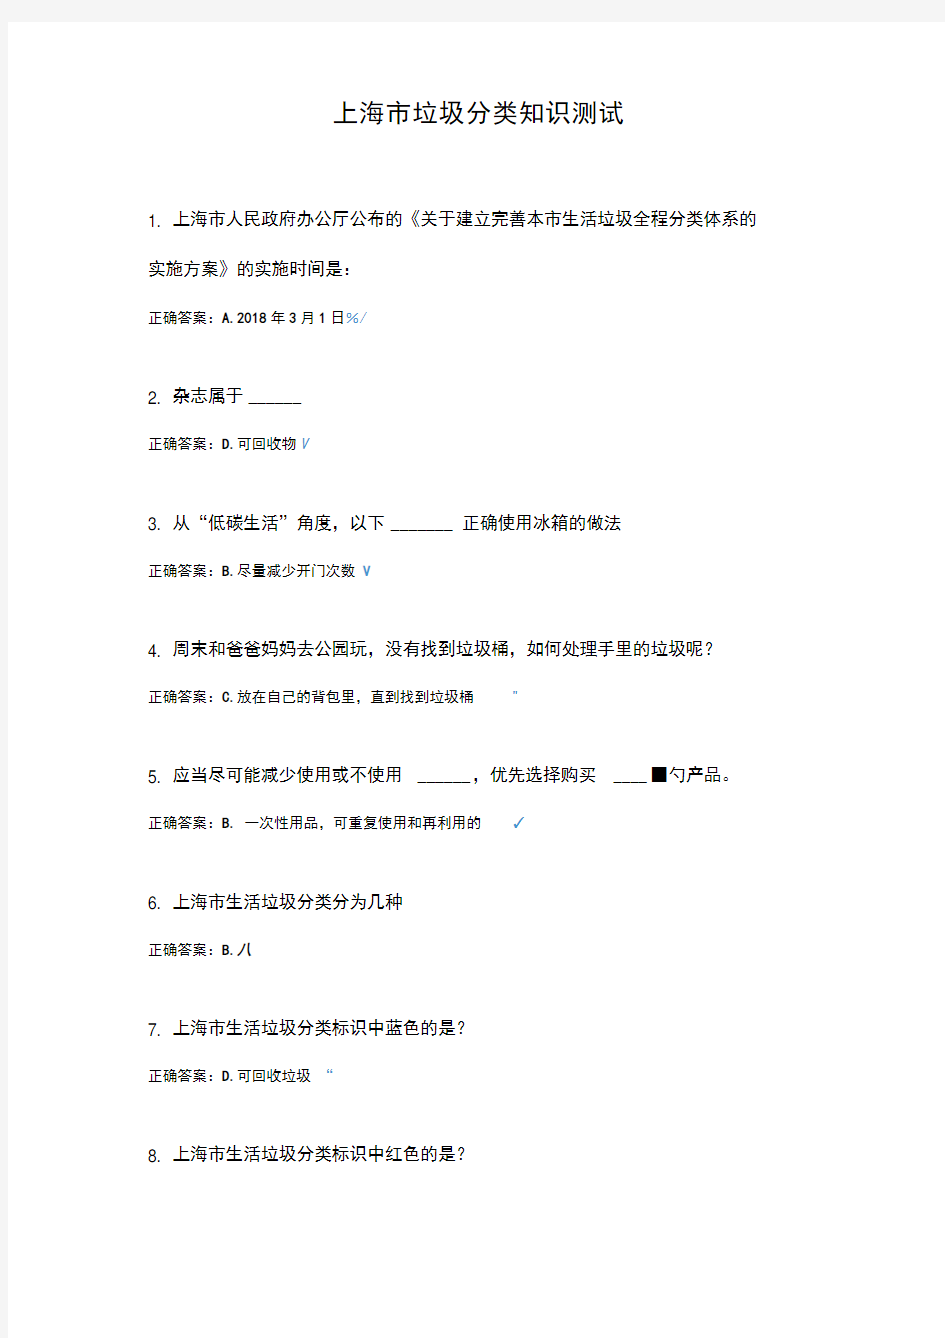 上海市垃圾分类知识测试(答案)